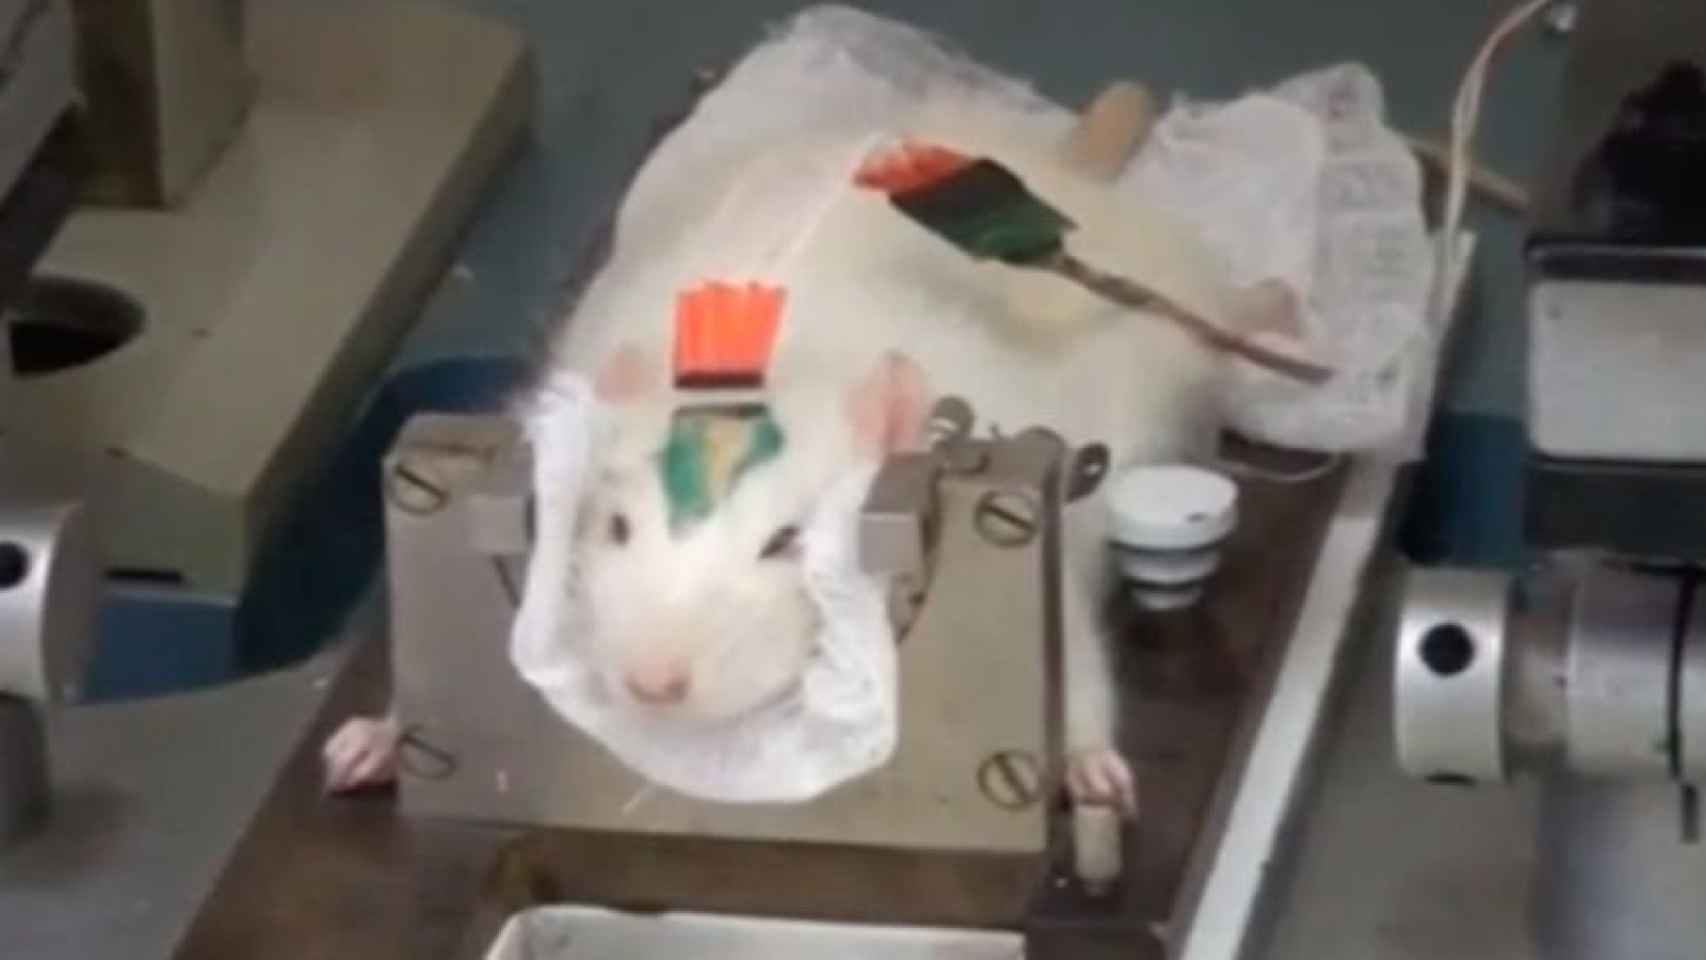 Científicos rusos investigan con ratas para detectar explosivos.